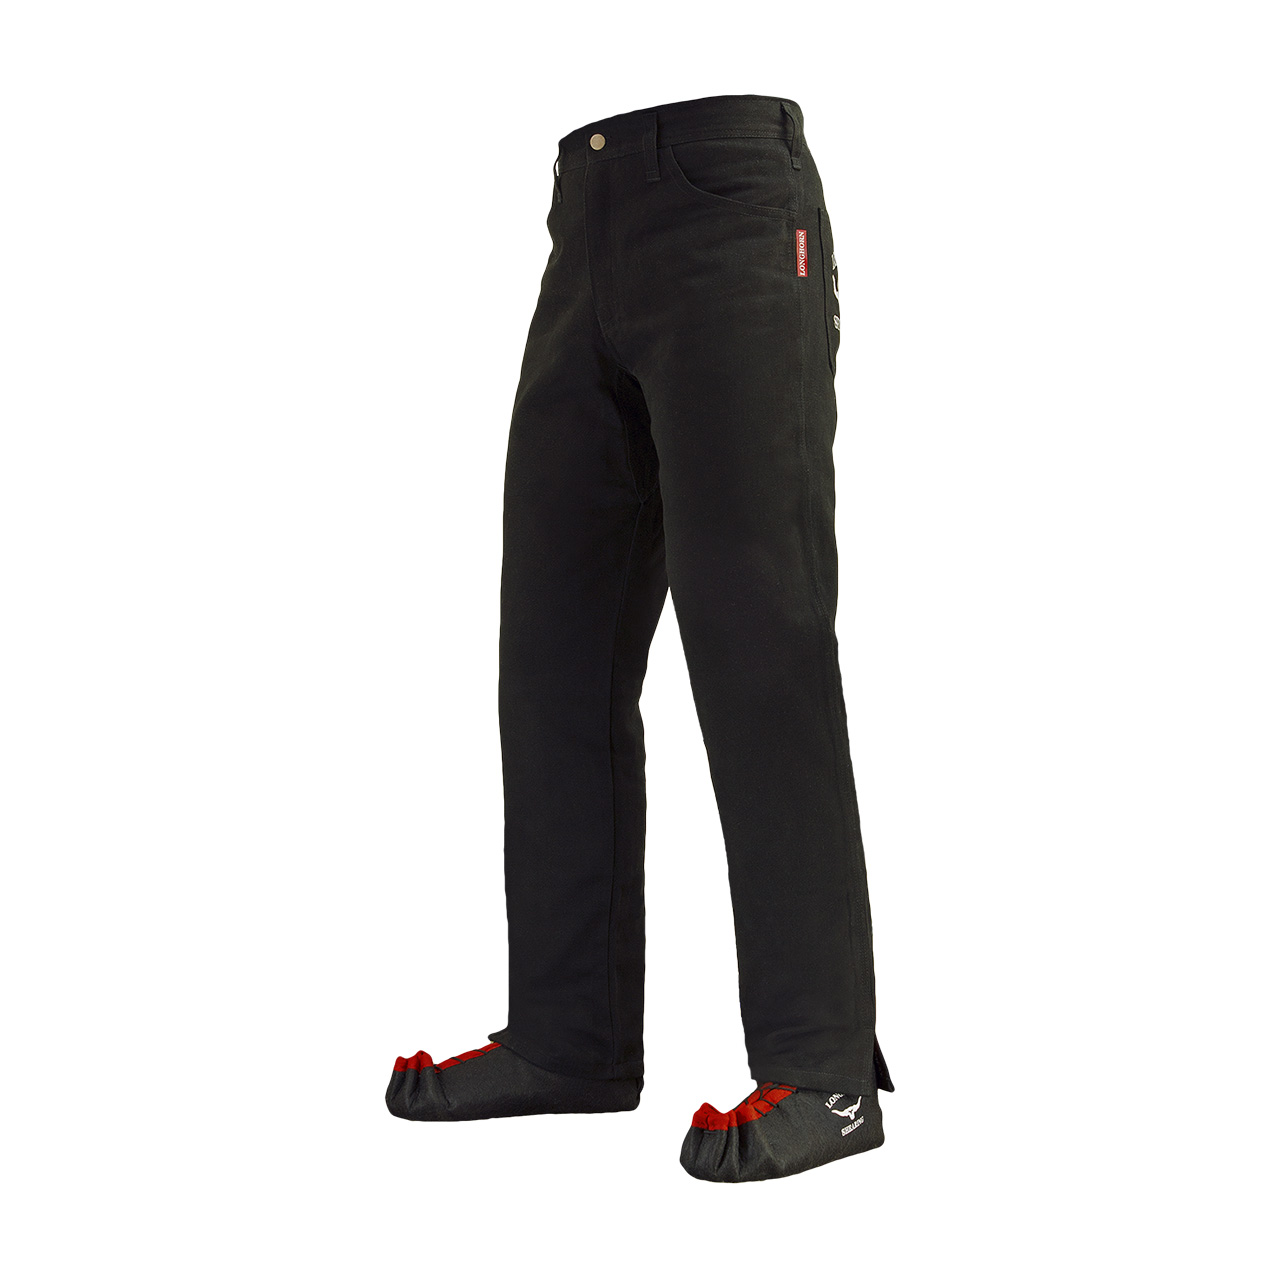 Longhorn™ kalhoty pro střihače ovcí s 2 předními kapsami velikost Stout 38/30 (5 1/4)